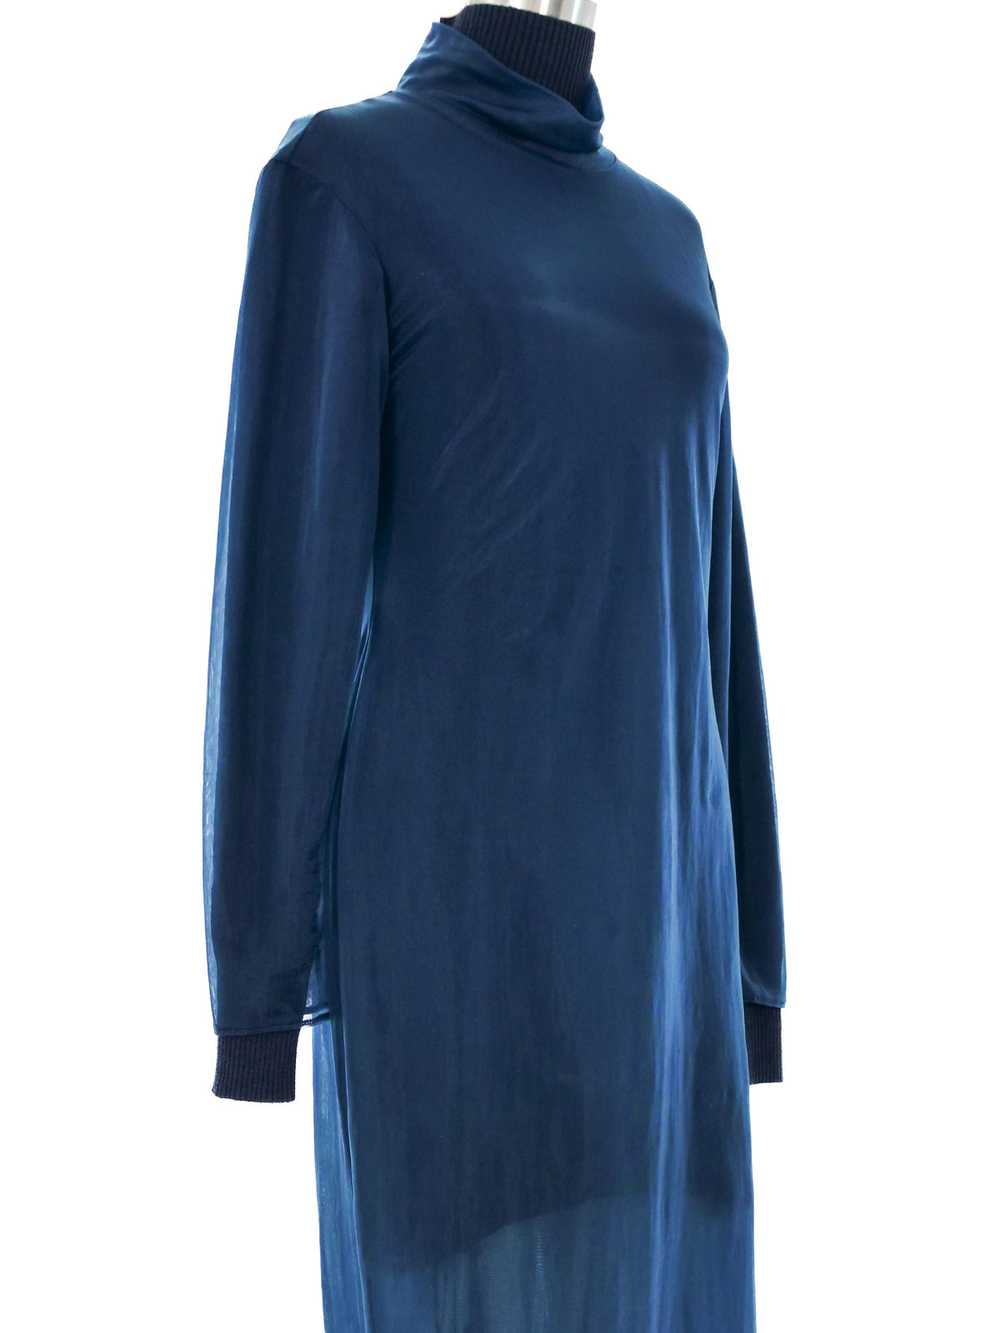 Helmut Lang Navy Layered Chiffon Sweater Dress - image 2